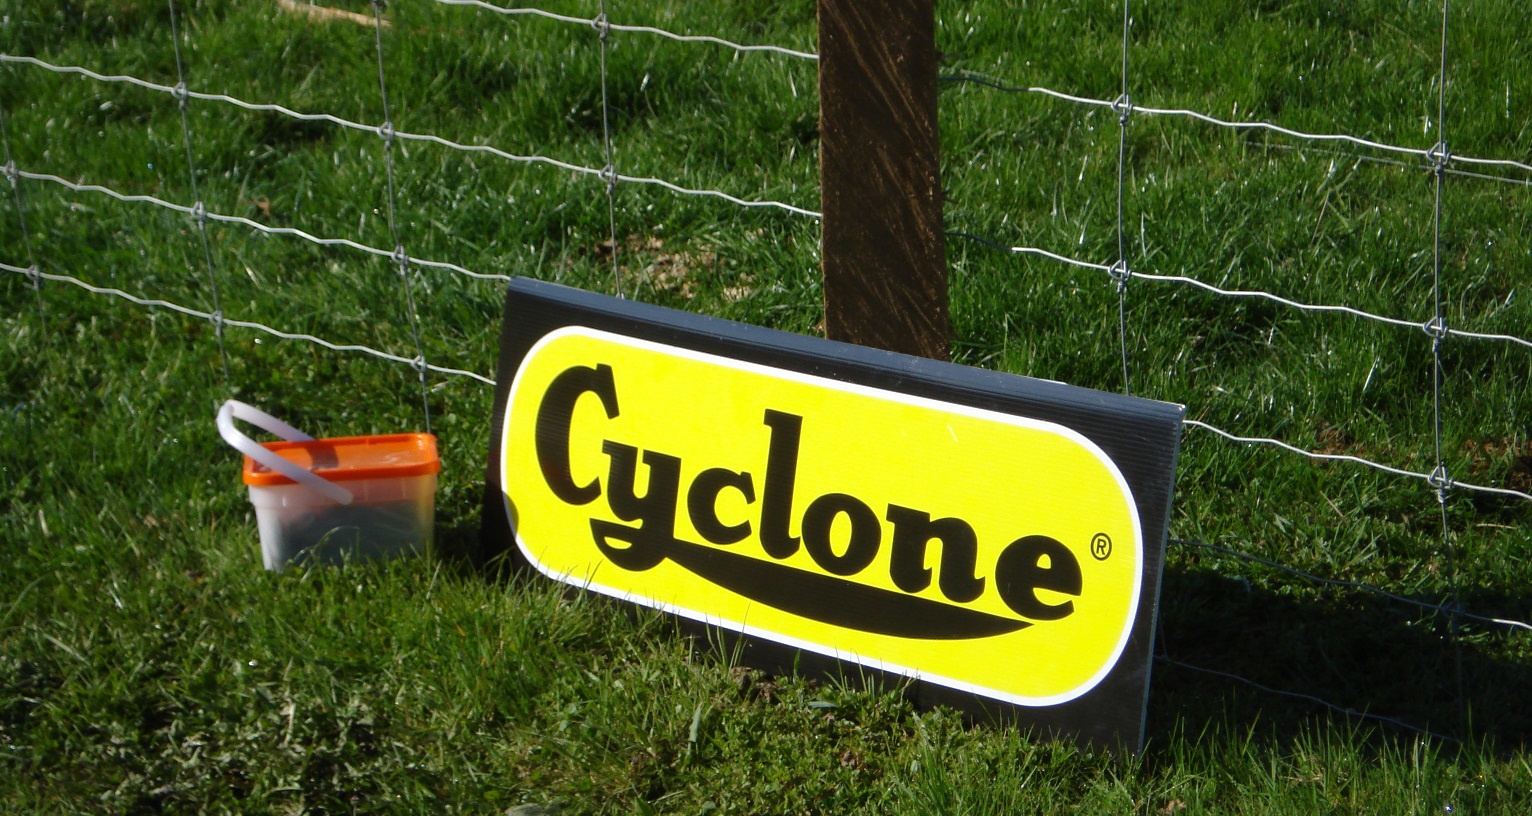 grillage-cyclone-bandeau-2